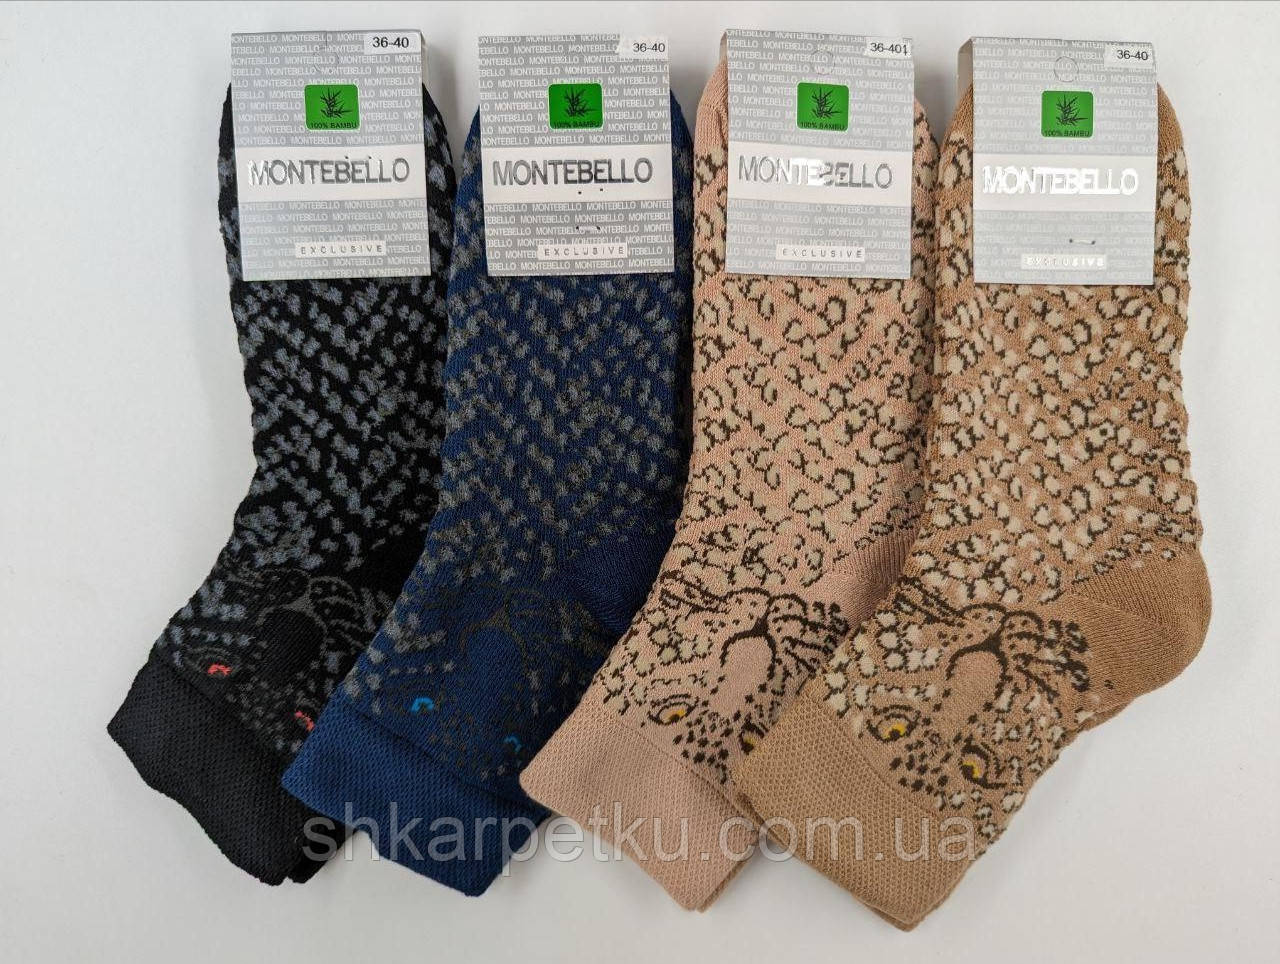 Жіночі середні шкарпетки, махрові шкарпетки Montebello леопард 36-40 мікс кольорів 12 пар/уп